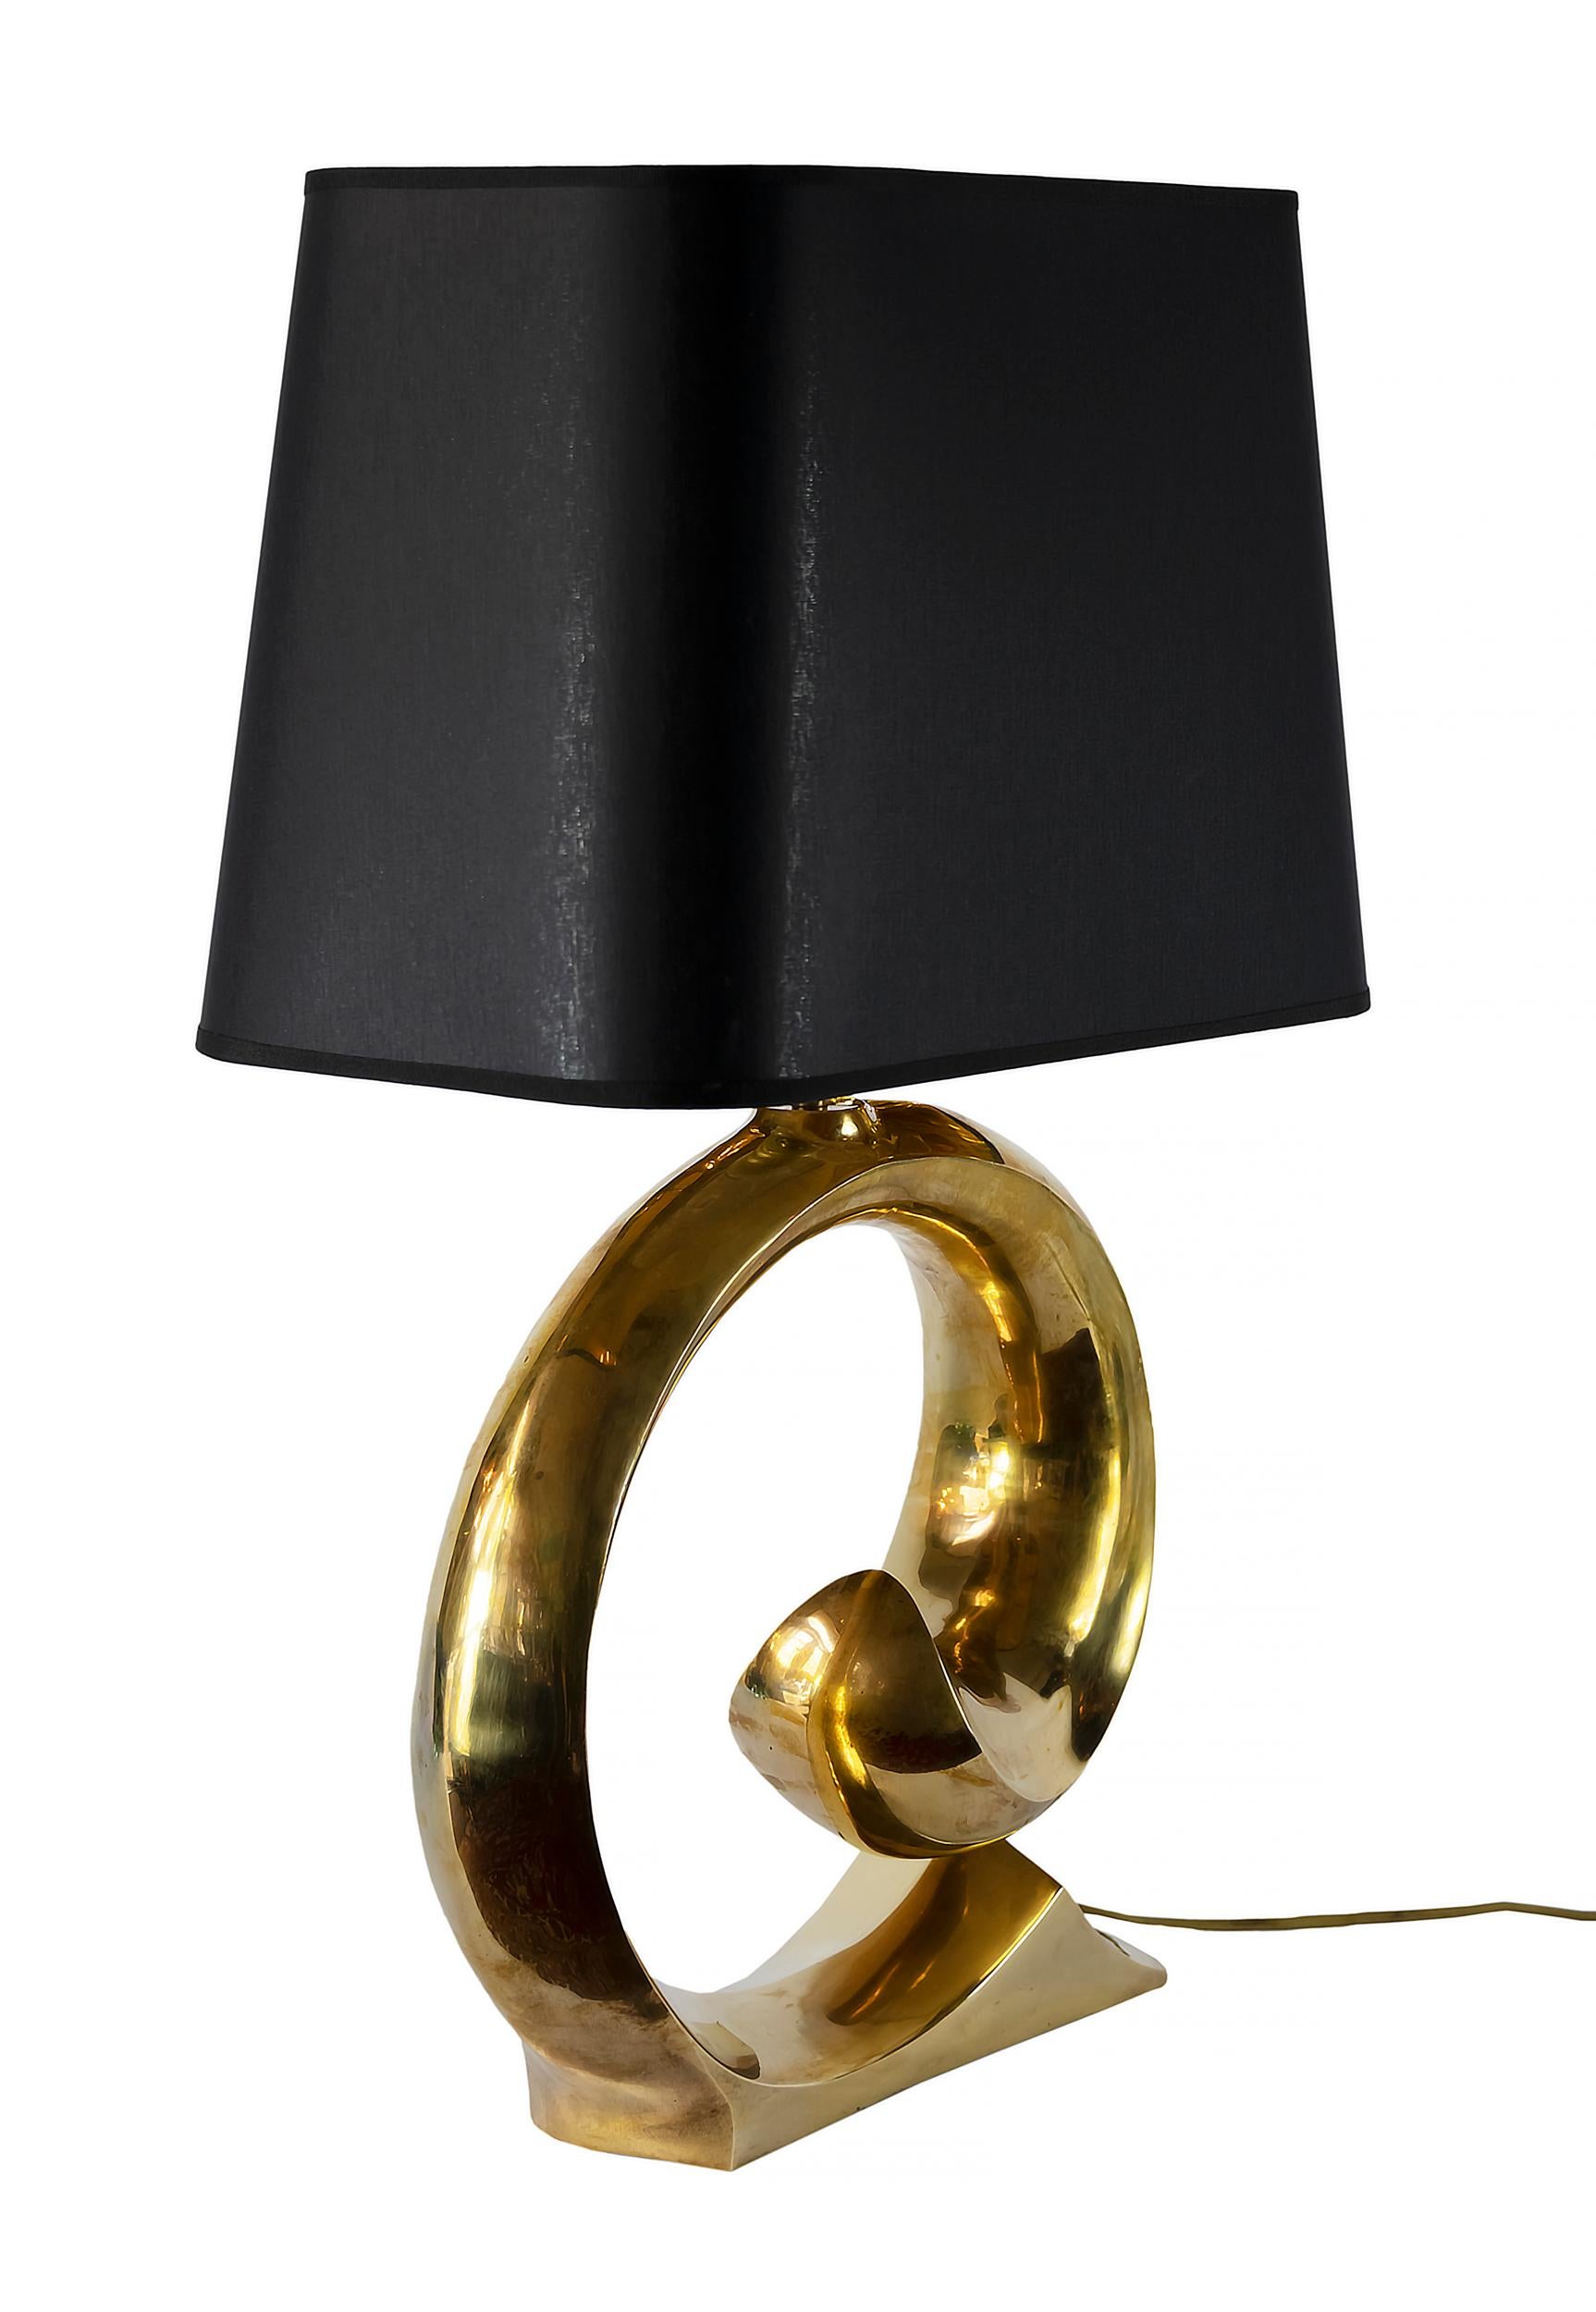 Lampe de table vintage en laiton de Pierre Carding des années 1970.
La lampe est équipée d'un nouvel abat-jour en textile noir avec intérieur doré.
La lampe comprend une ampoule E27.
 